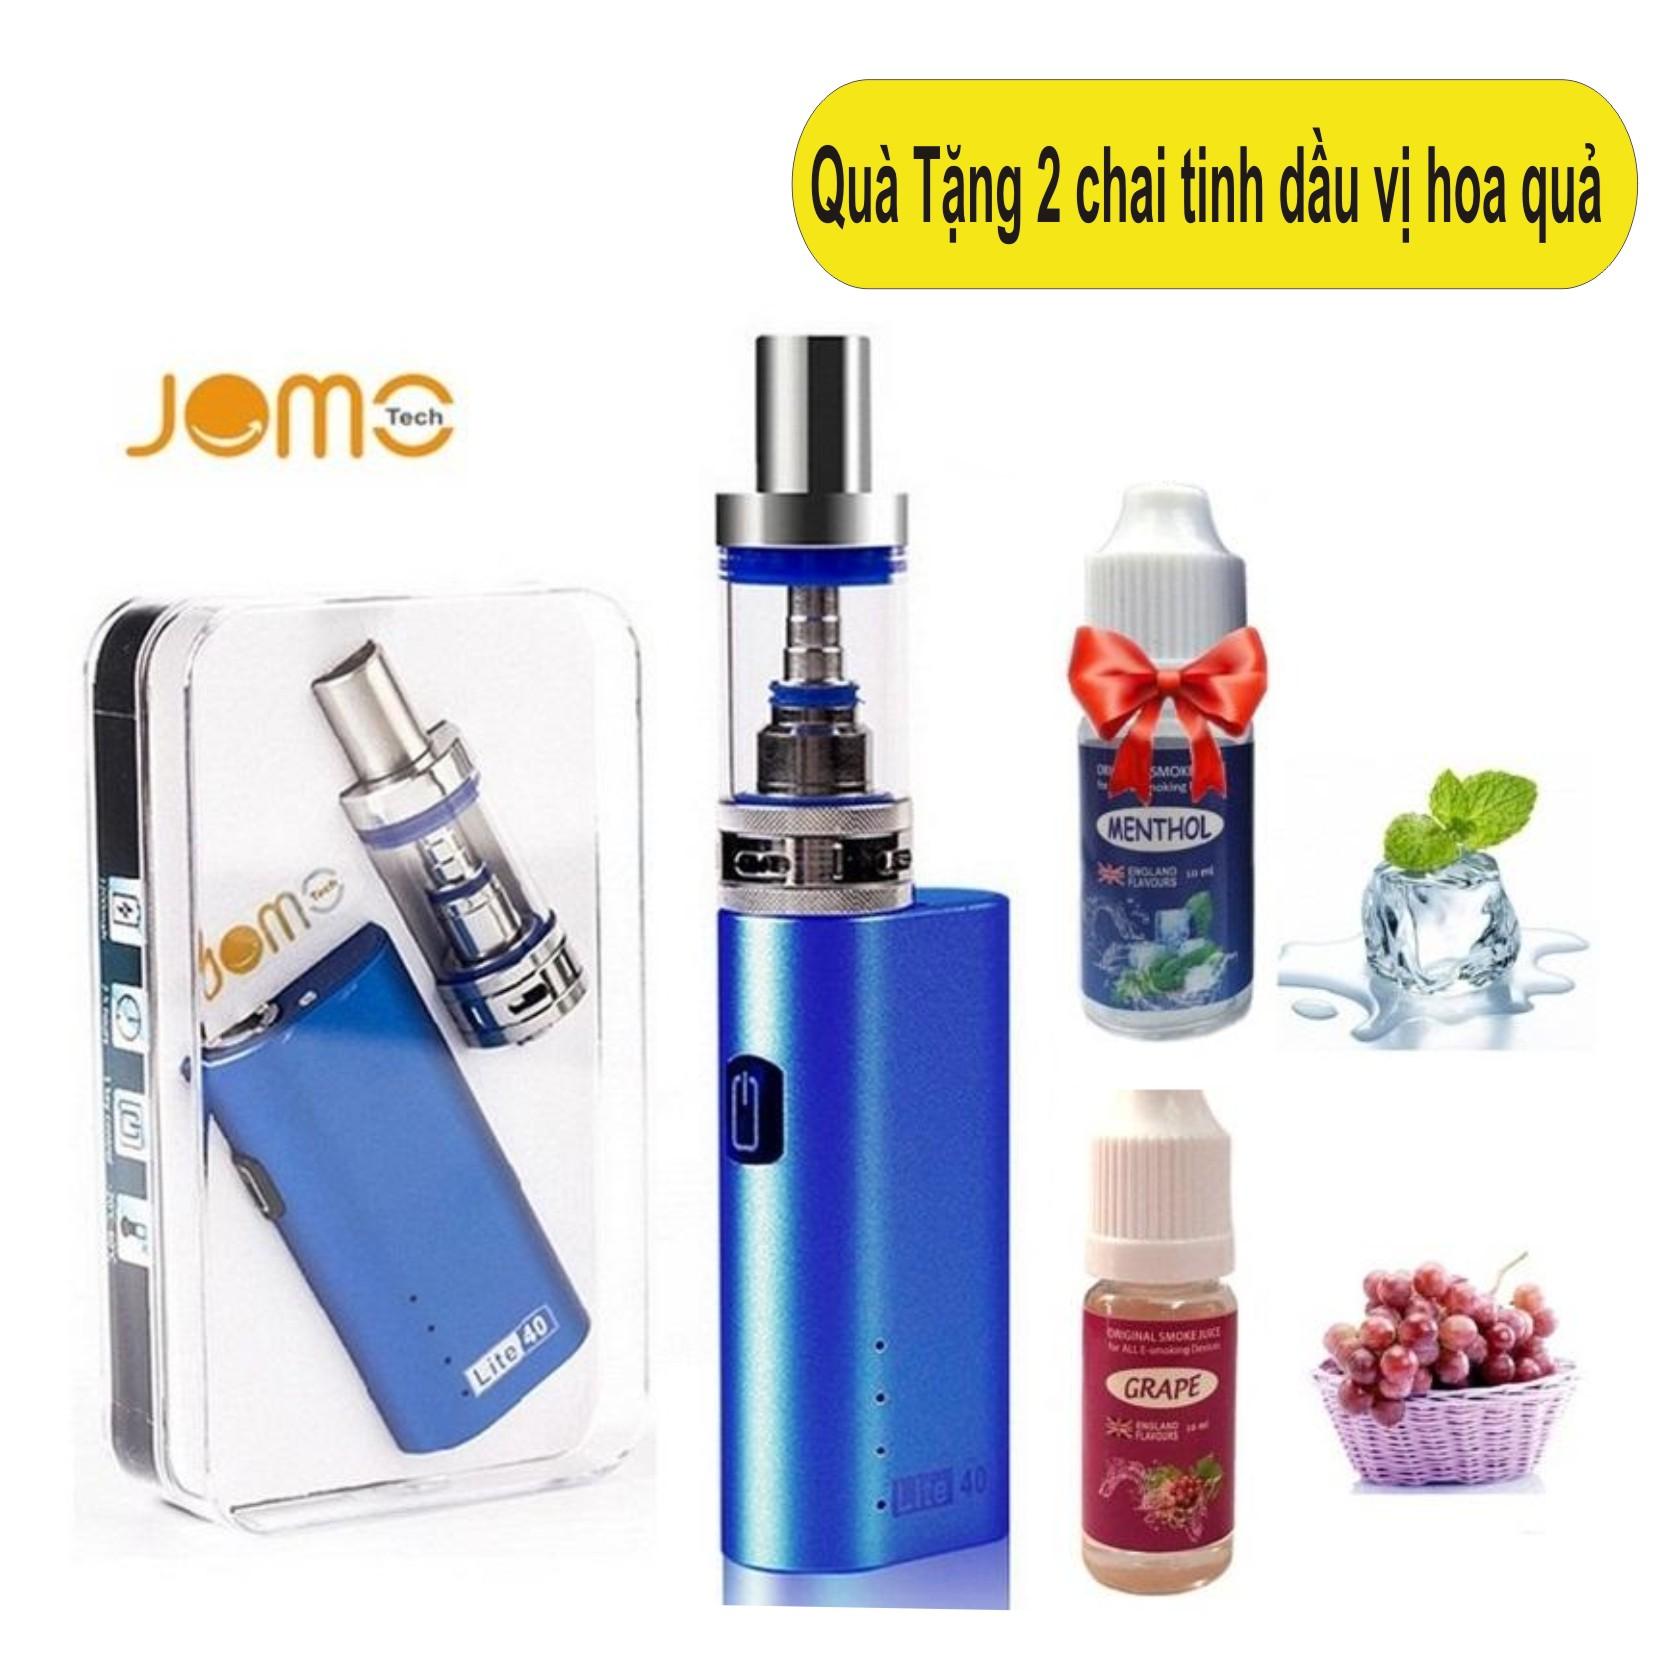 Bộ thuốc lá điện tử Vape – Shisha 2200mAh JOMO Lite 40w Kit (Bạc) + Quà tặng 2 chai tinh...